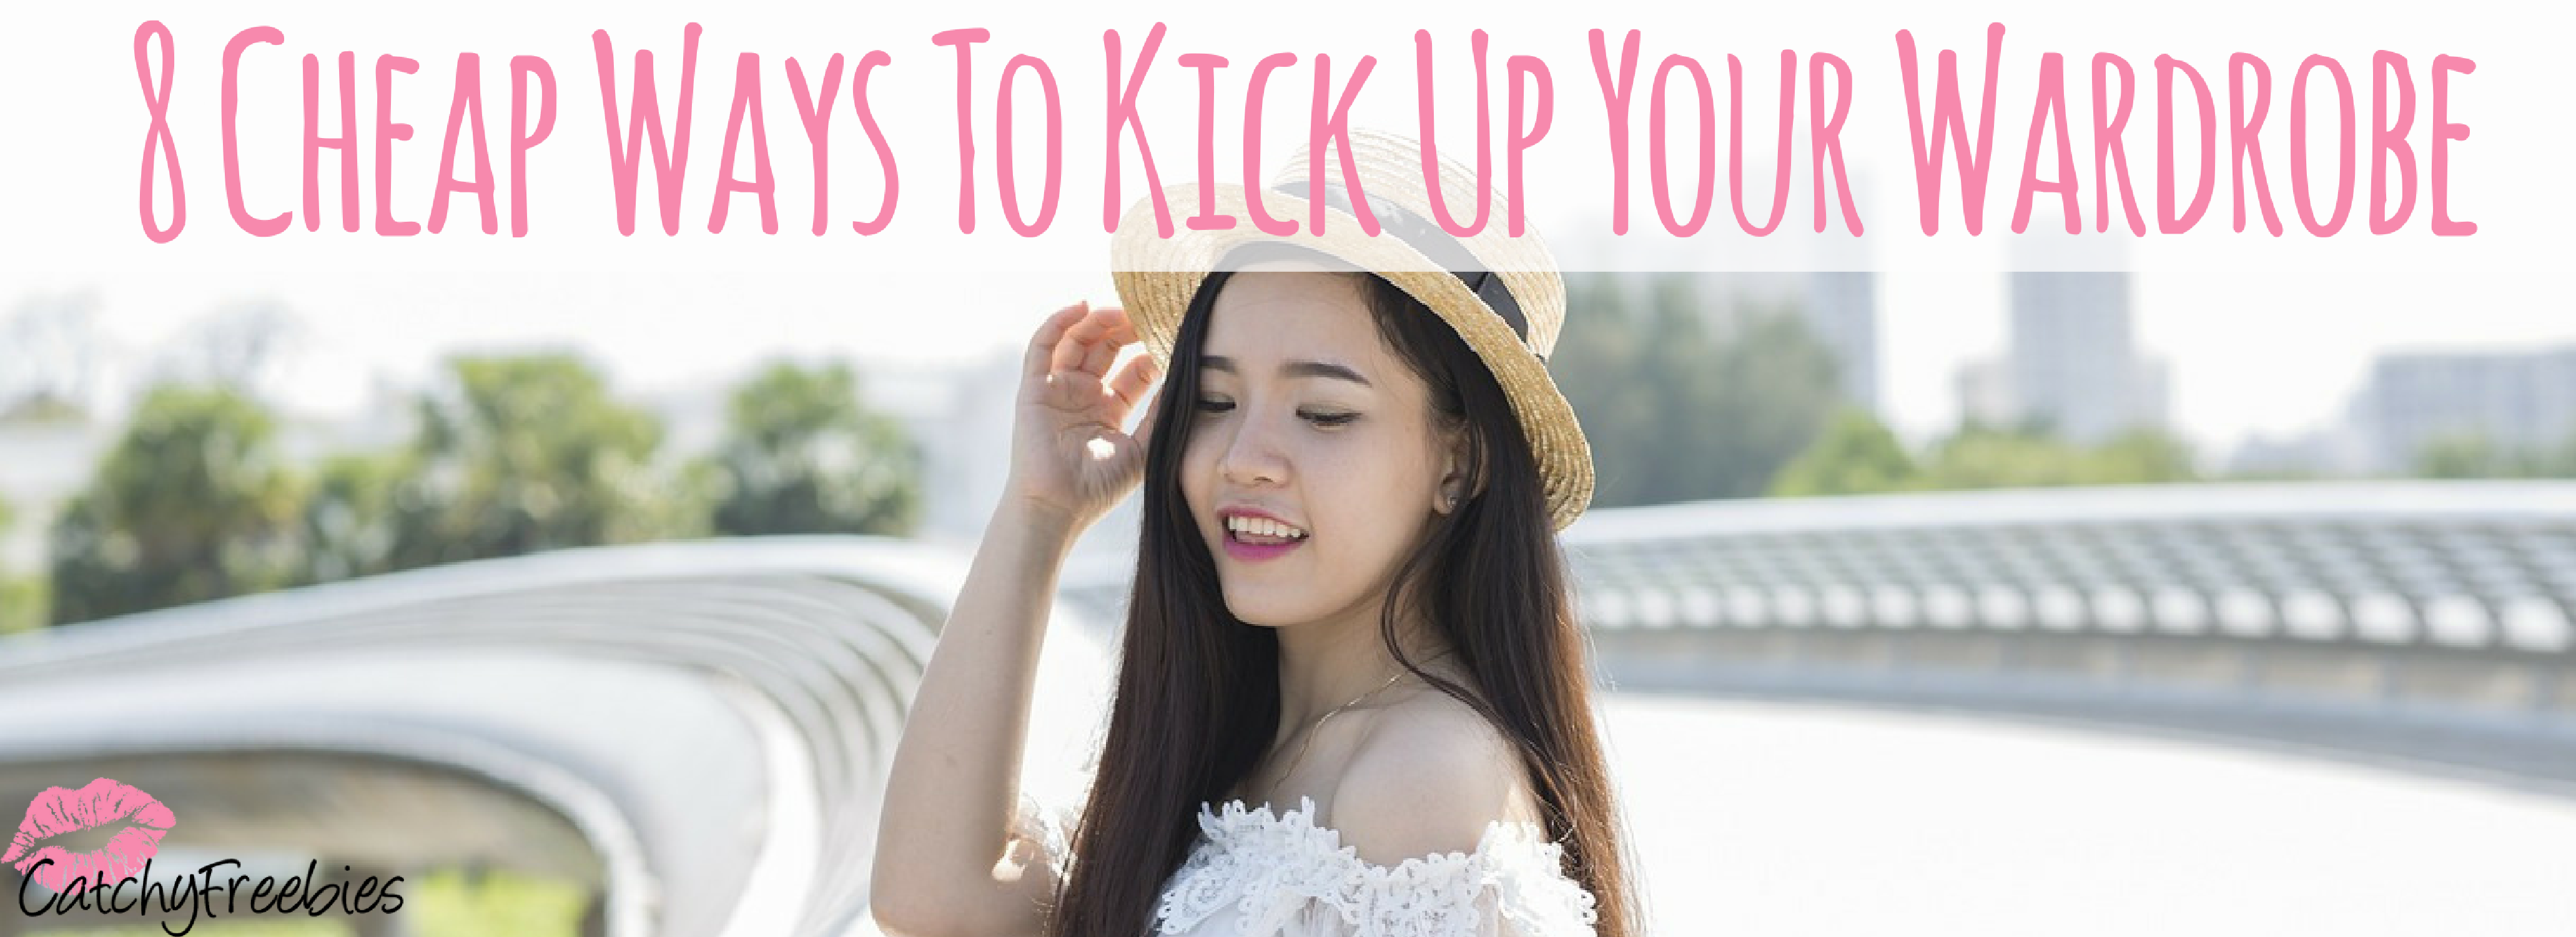 8 Cheap Ways To Kick Up Your Wardrobe